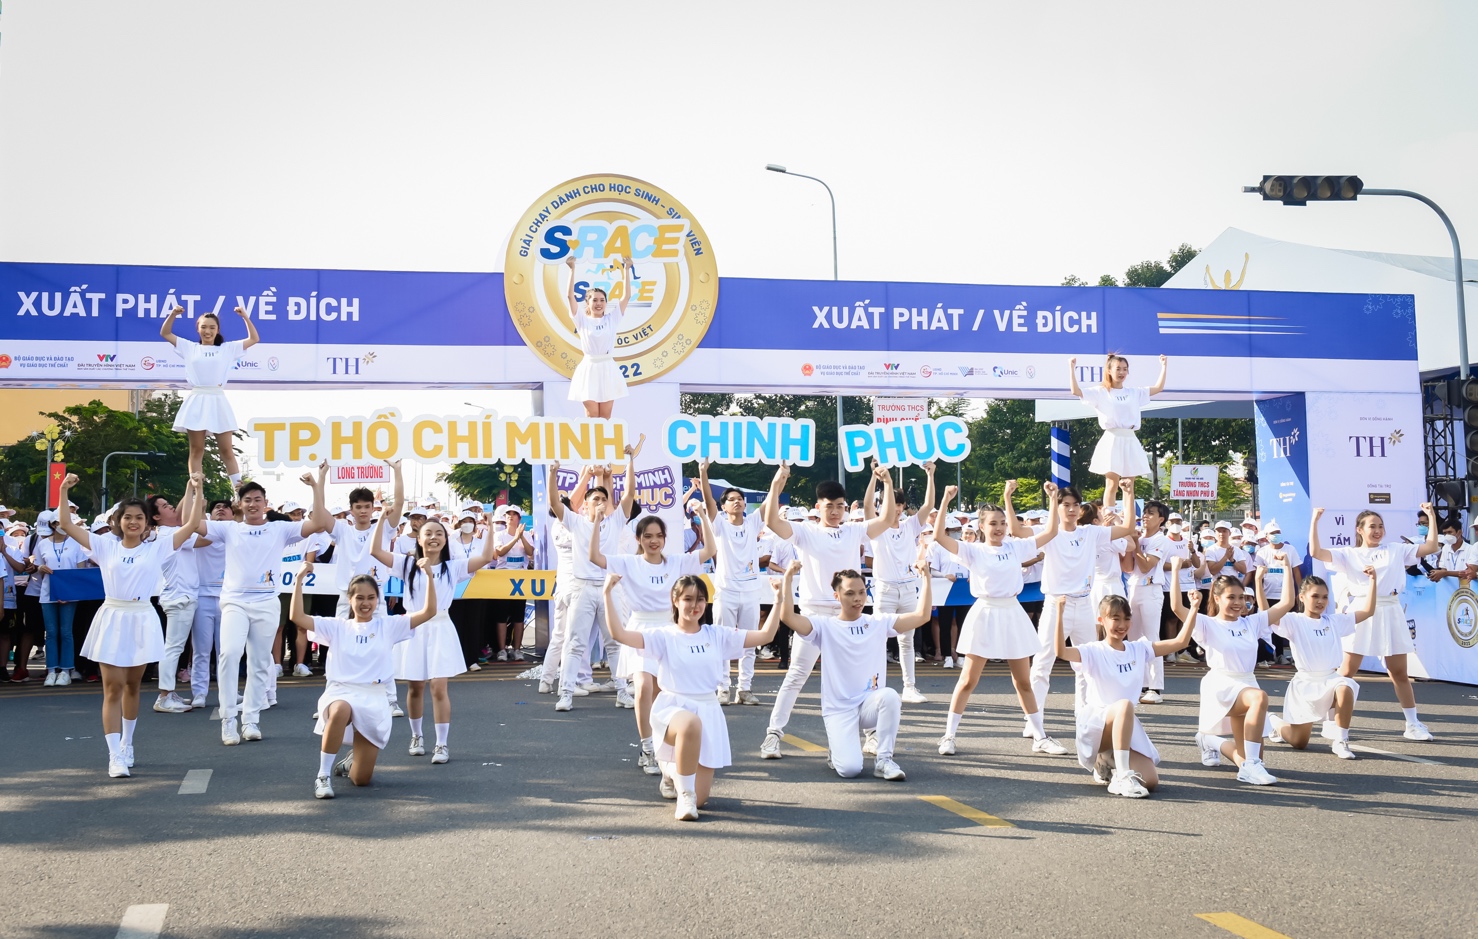 Gần 5.000 HSSV tham gia “Chinh phục” tại S-Race TPHCM - Ảnh: THG